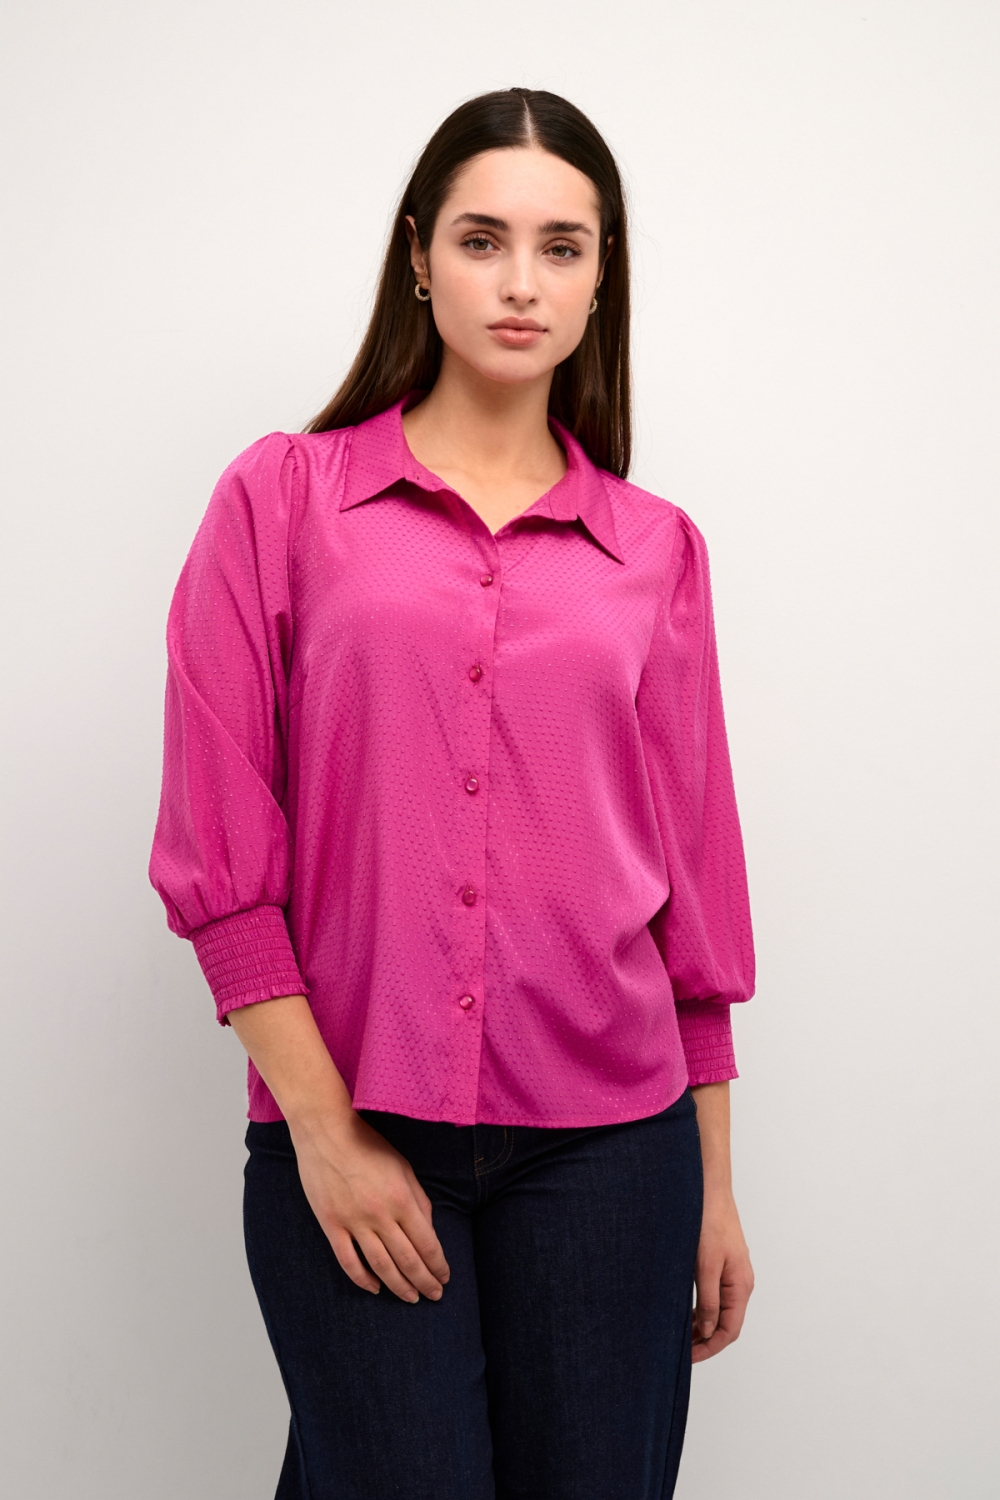 Søt skjortebluse med trekvart ermer med strikk og en fin, detaljert struktur i stoffet. Skjorten er normal i størrelsen. 